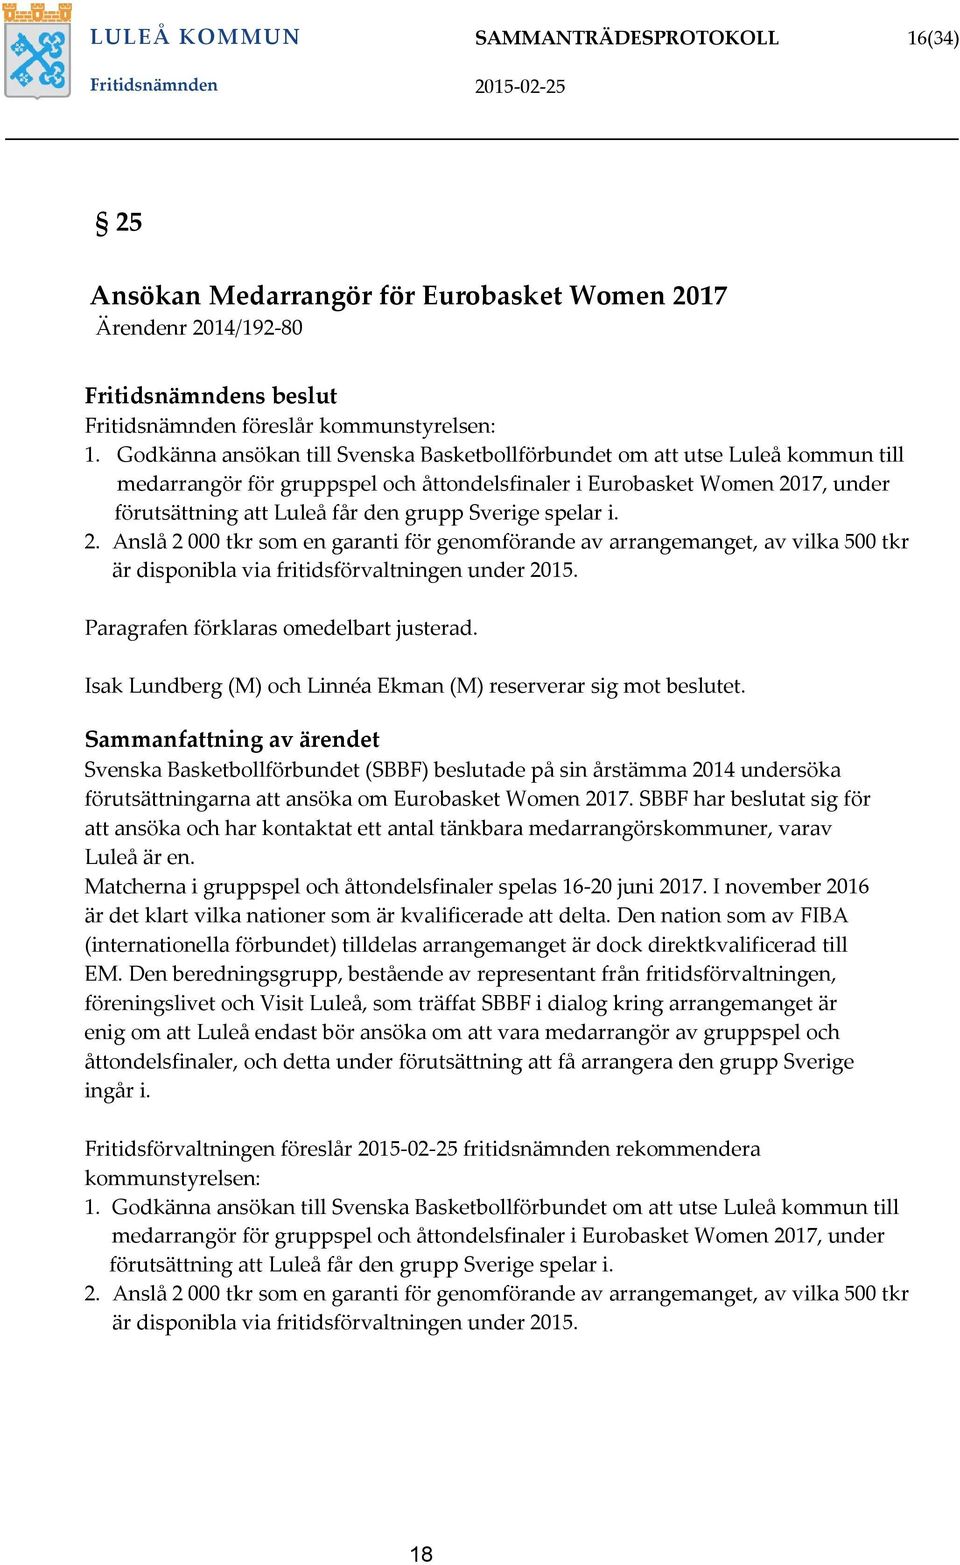 Godkänna ansökan till Svenska Basketbollförbundet om att utse Luleå kommun till medarrangör för gruppspel och åttondelsfinaler i Eurobasket Women 2017, under förutsättning att Luleå får den grupp